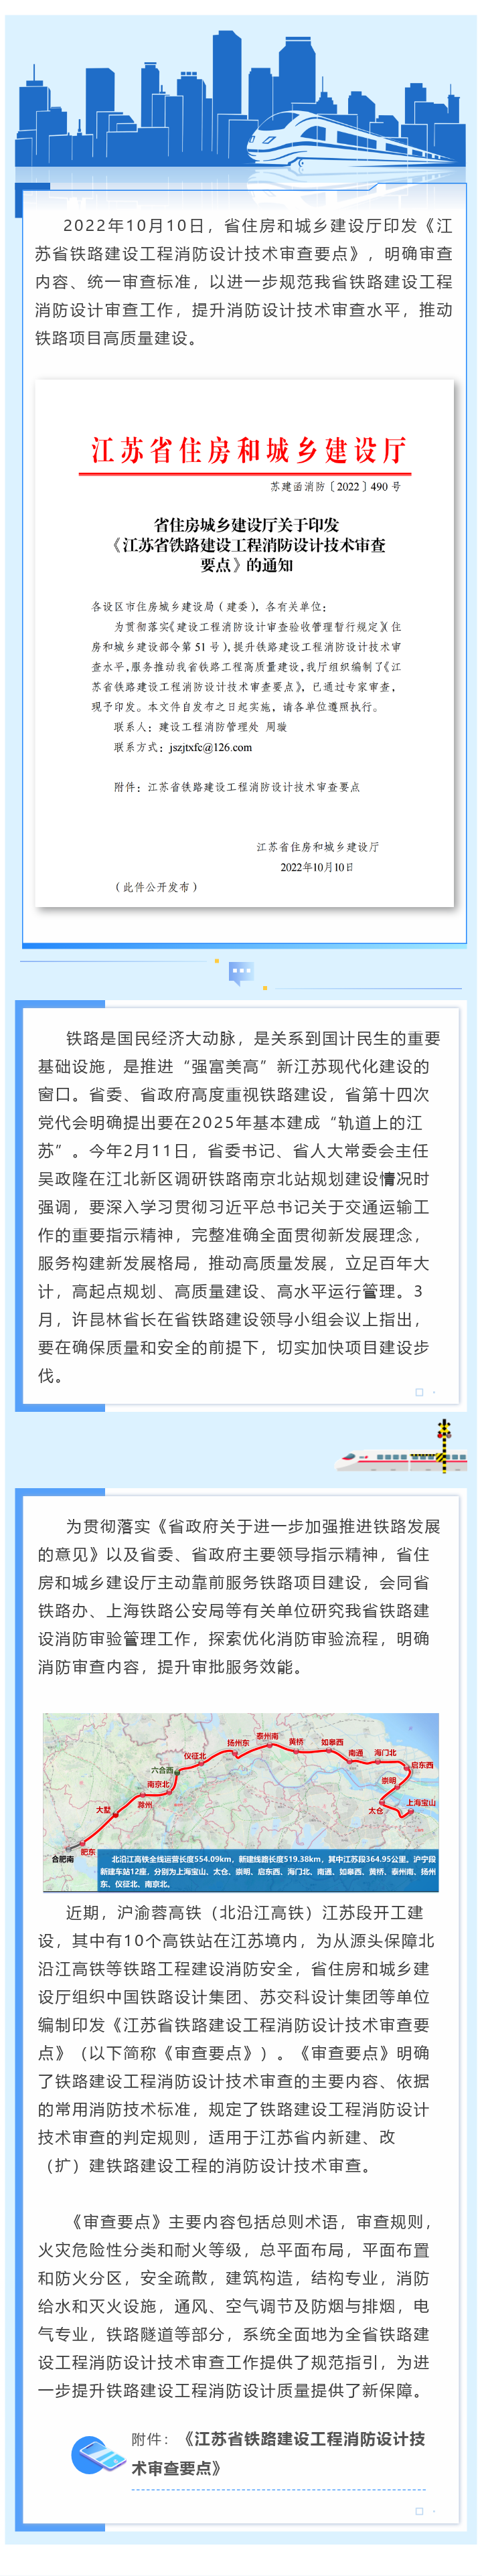 江苏省铁路建设工程消防设计技术审查要点